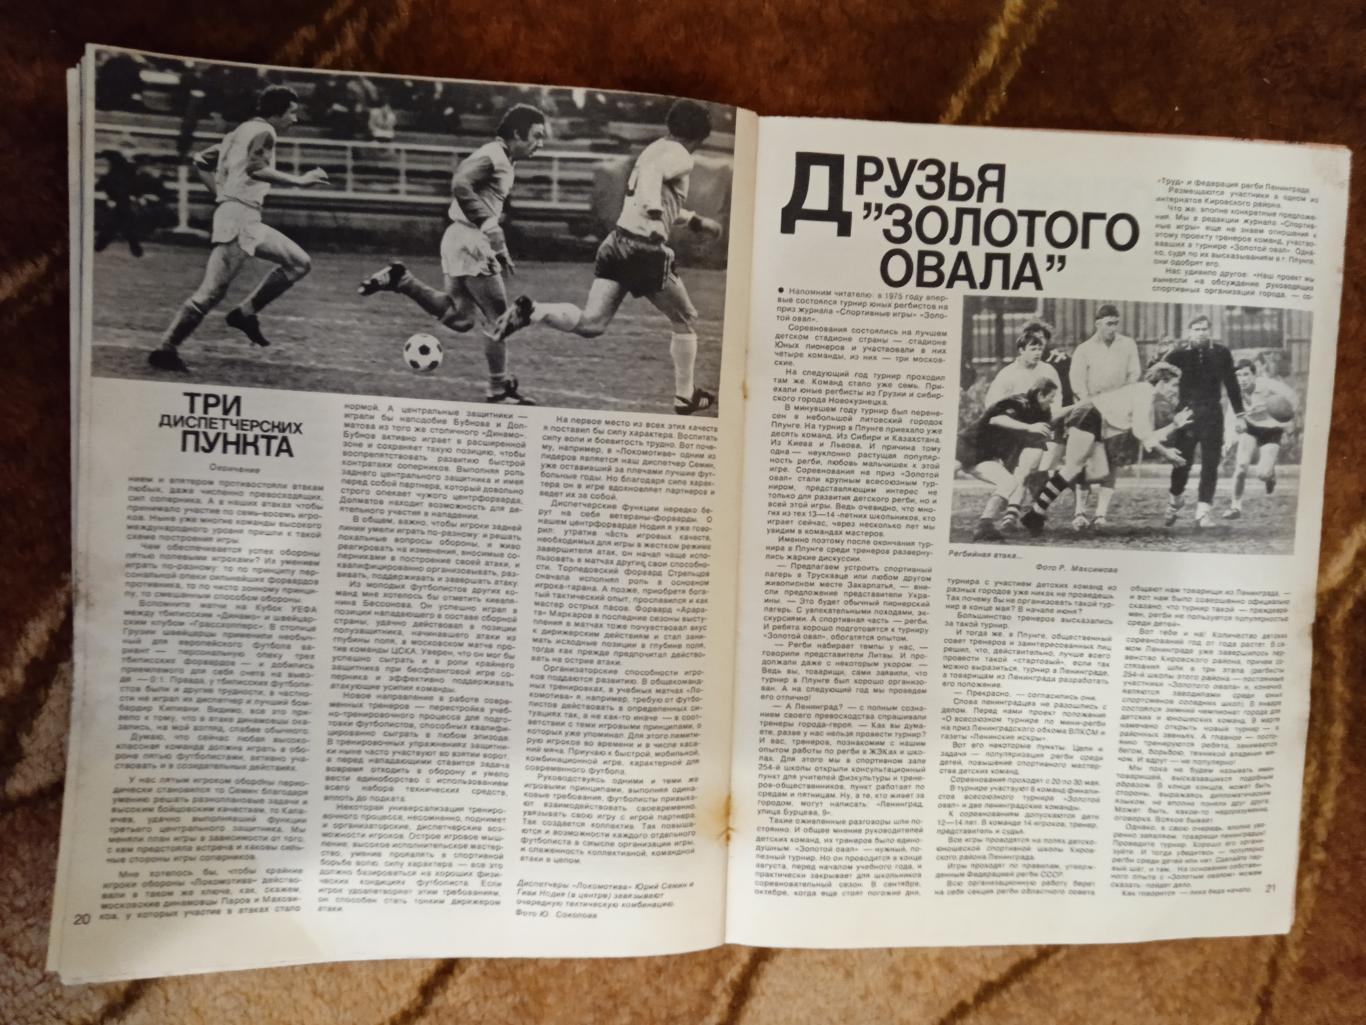 Журнал.Спортивные игры № 2 1978.Футбол,хоккей (СССР-Канада-НХЛ),волейбол,регби. 4